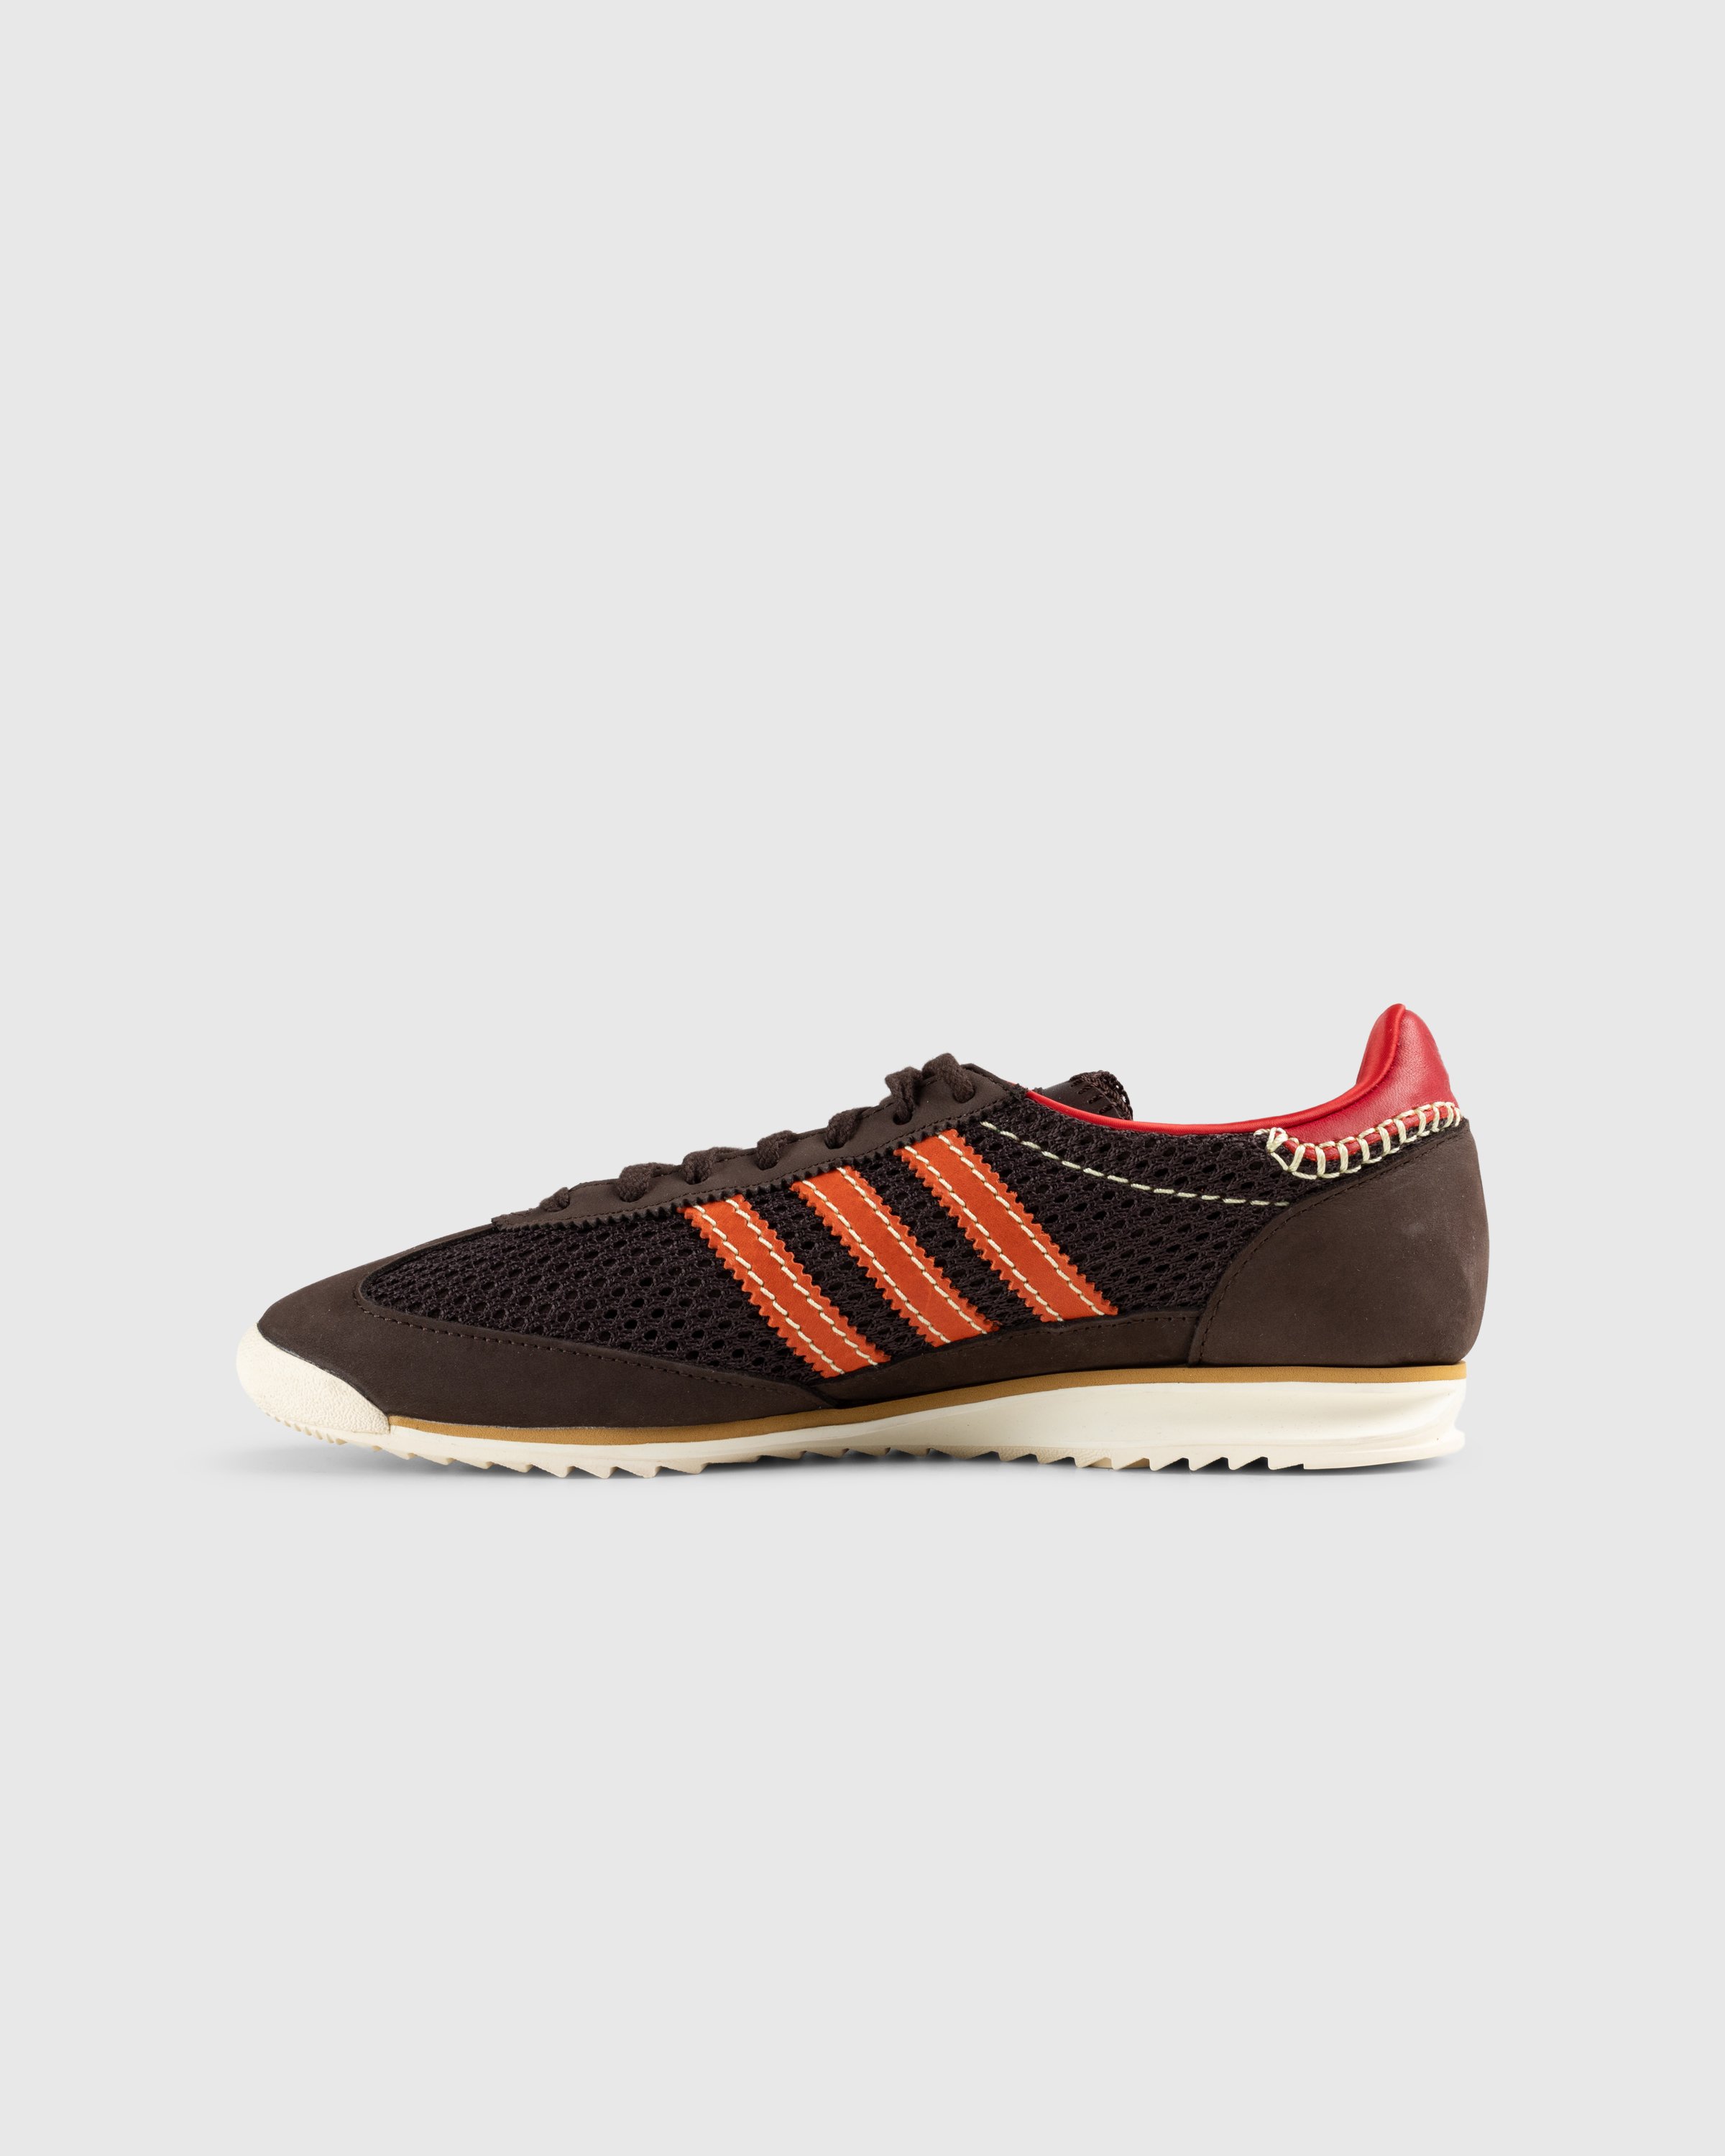 Adidas x Wales Bonner - SL72 Knit Dark Brown - Footwear - Brown - Image 2